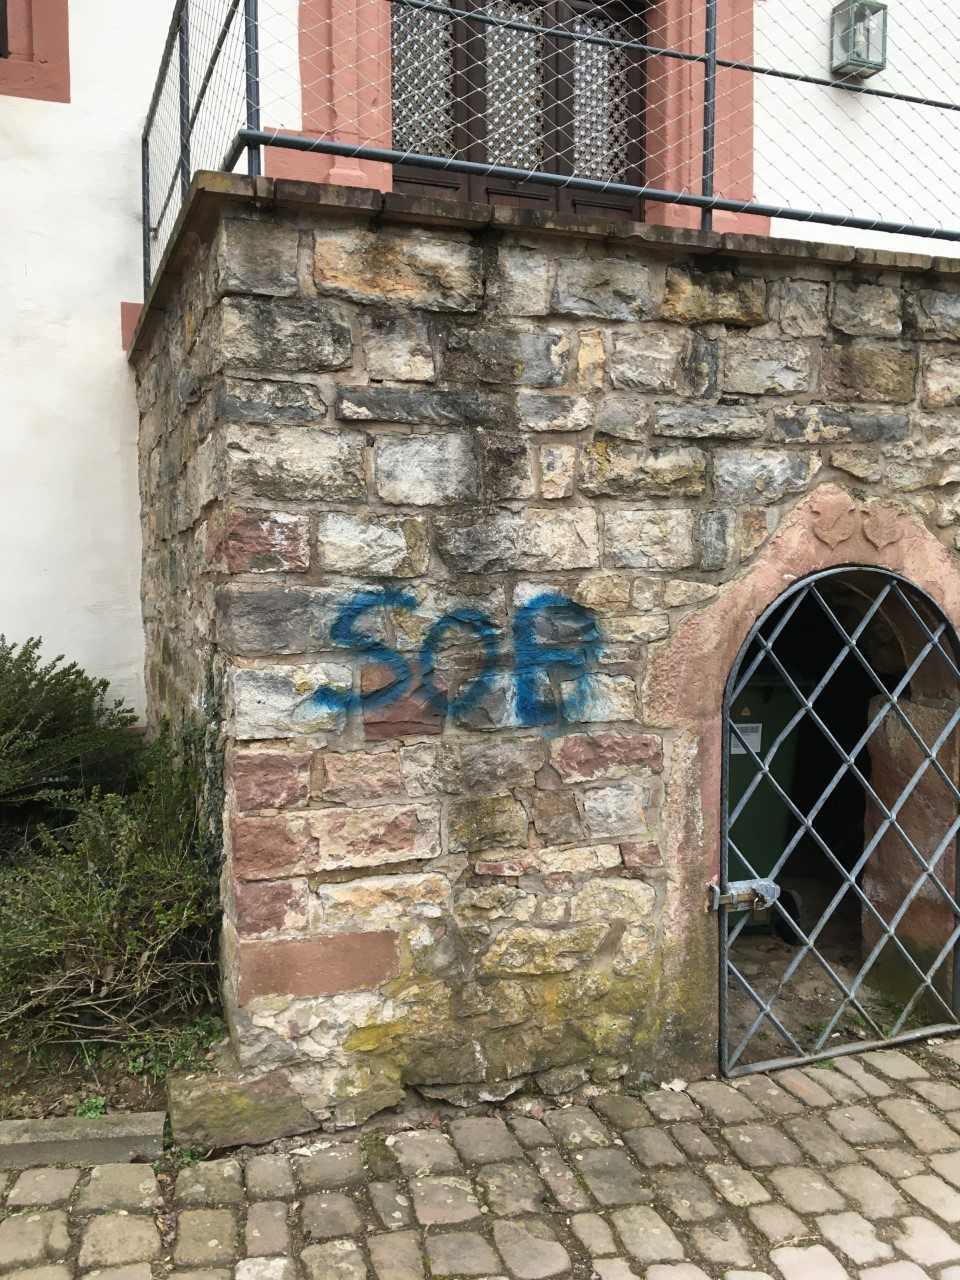 Stadt Wiesloch bittet um Mithilfe: Sachbeschädigung durch Sprayer am Bürgerhaus Altwiesloch